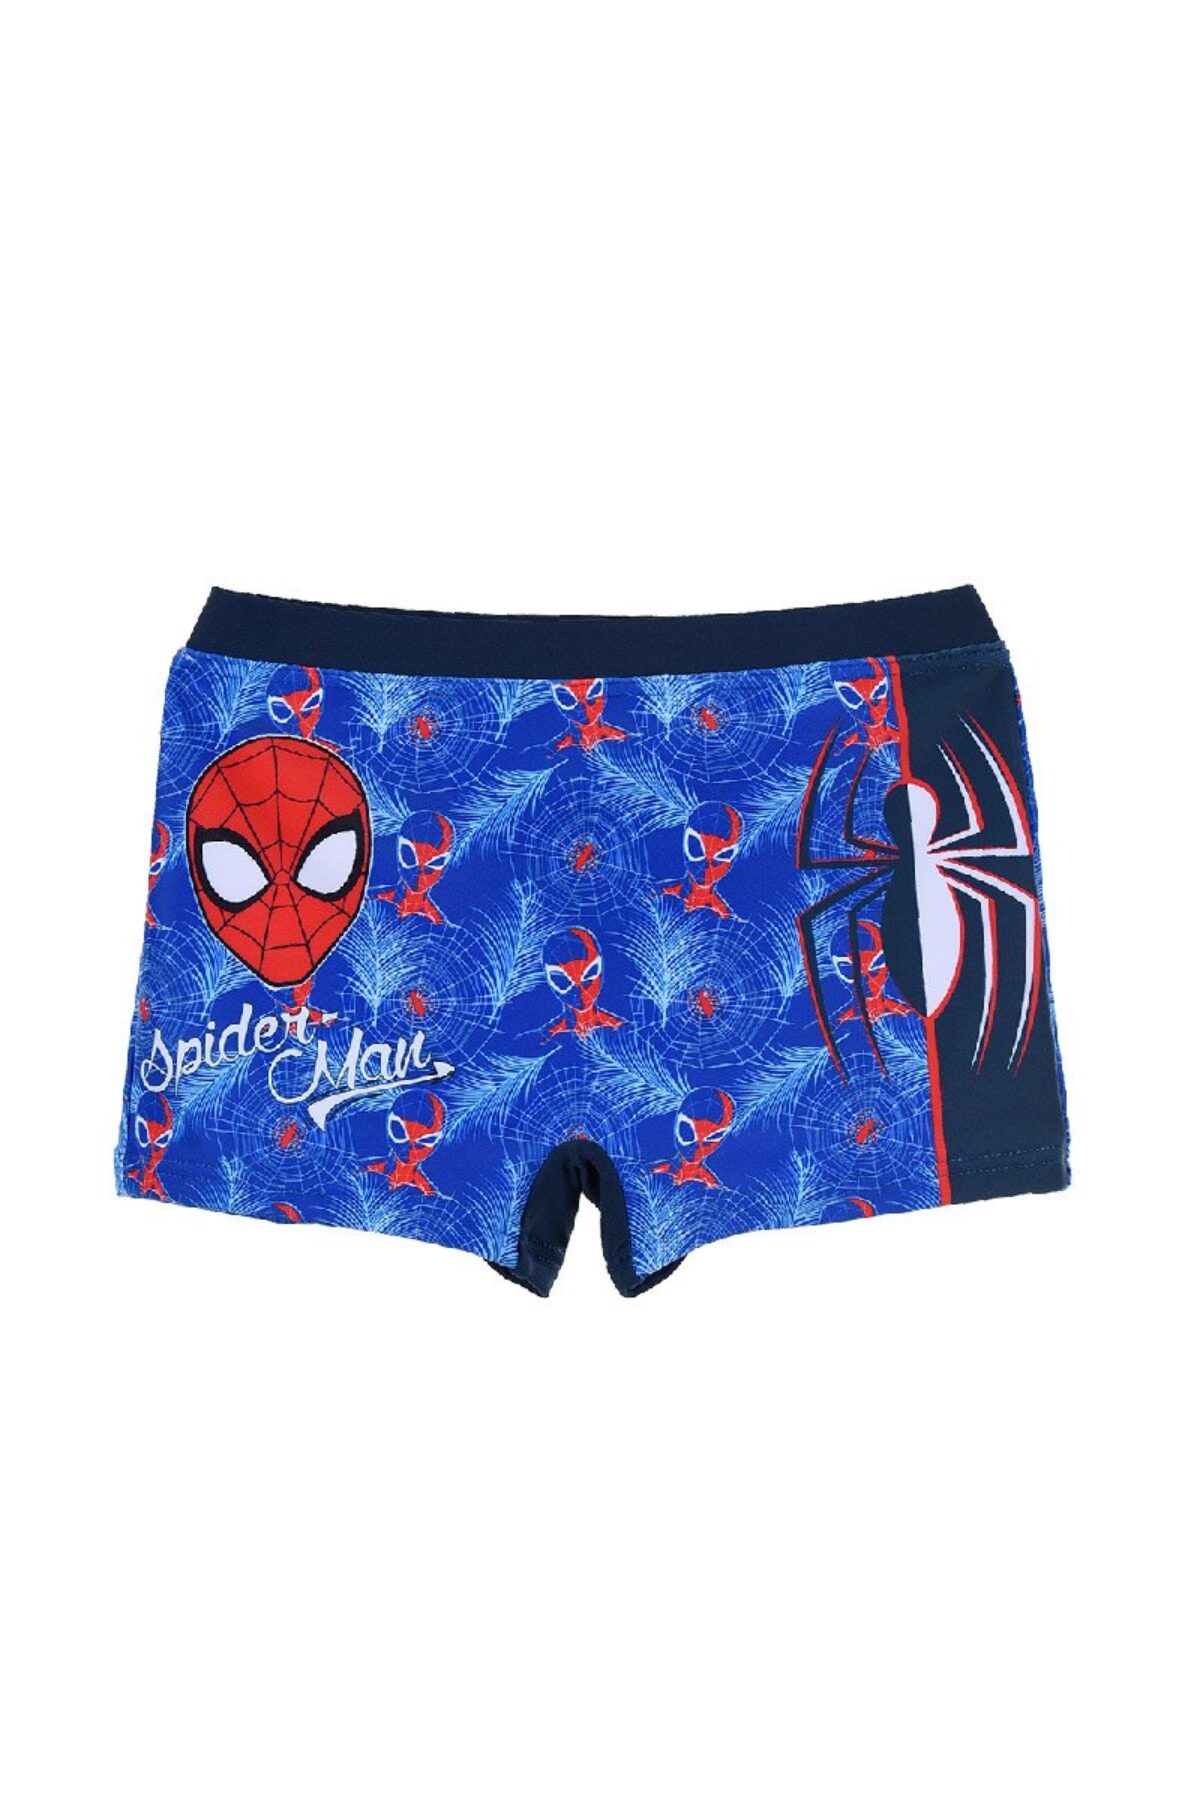 Boxers Spider Man en línea para niños | Bano con Marvel Spiderman para niños